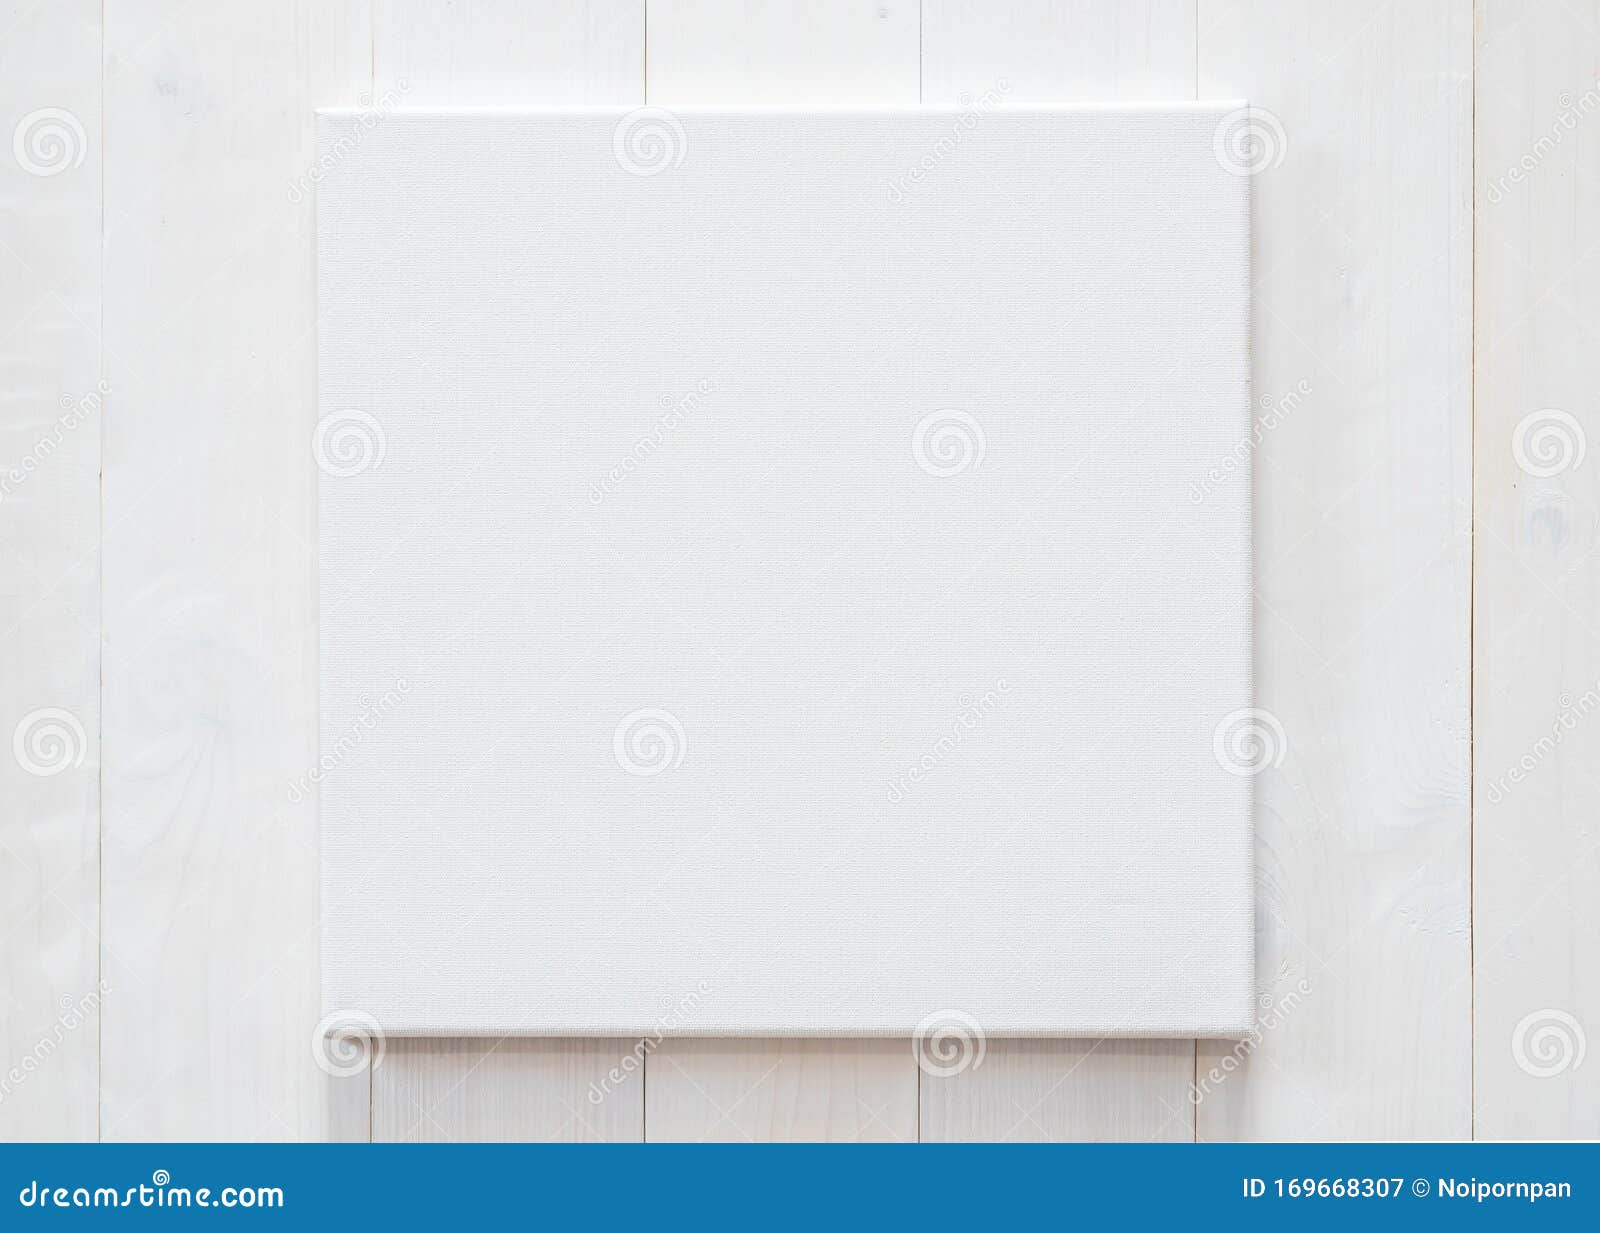 Witte Blanco Canvas Met Vierkante Afmetingen Op Witte Houten Wand Voor Kunstschilderingen En Foto's Hangen Stock Afbeelding Image of hangen, spatie: 169668307